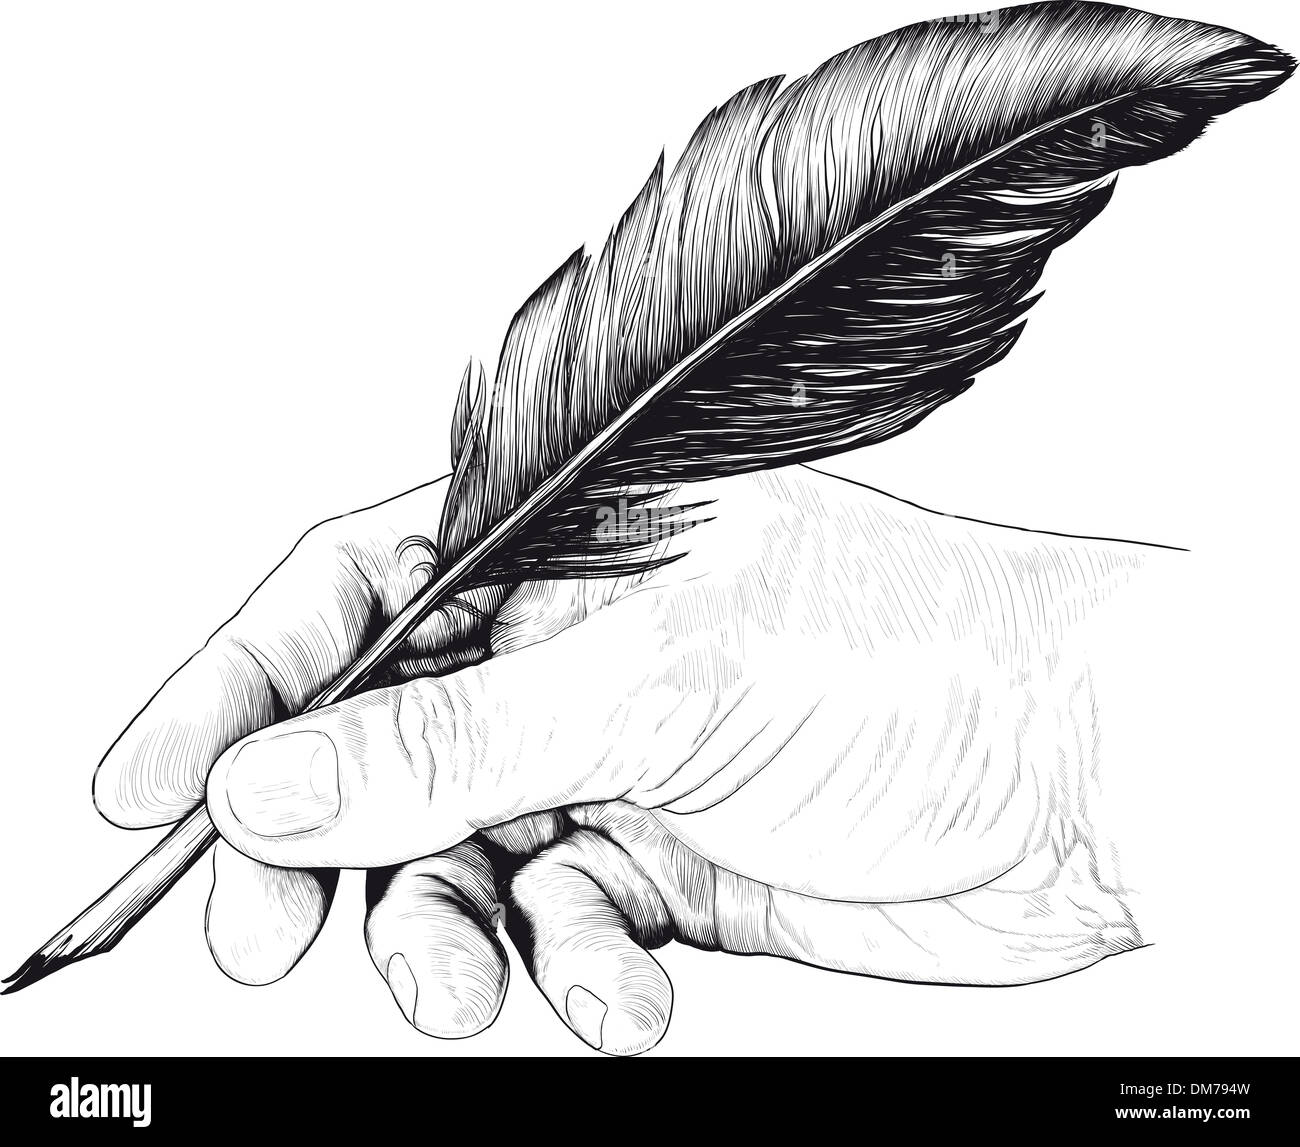 Disegno della mano con una penna di piuma Foto stock - Alamy